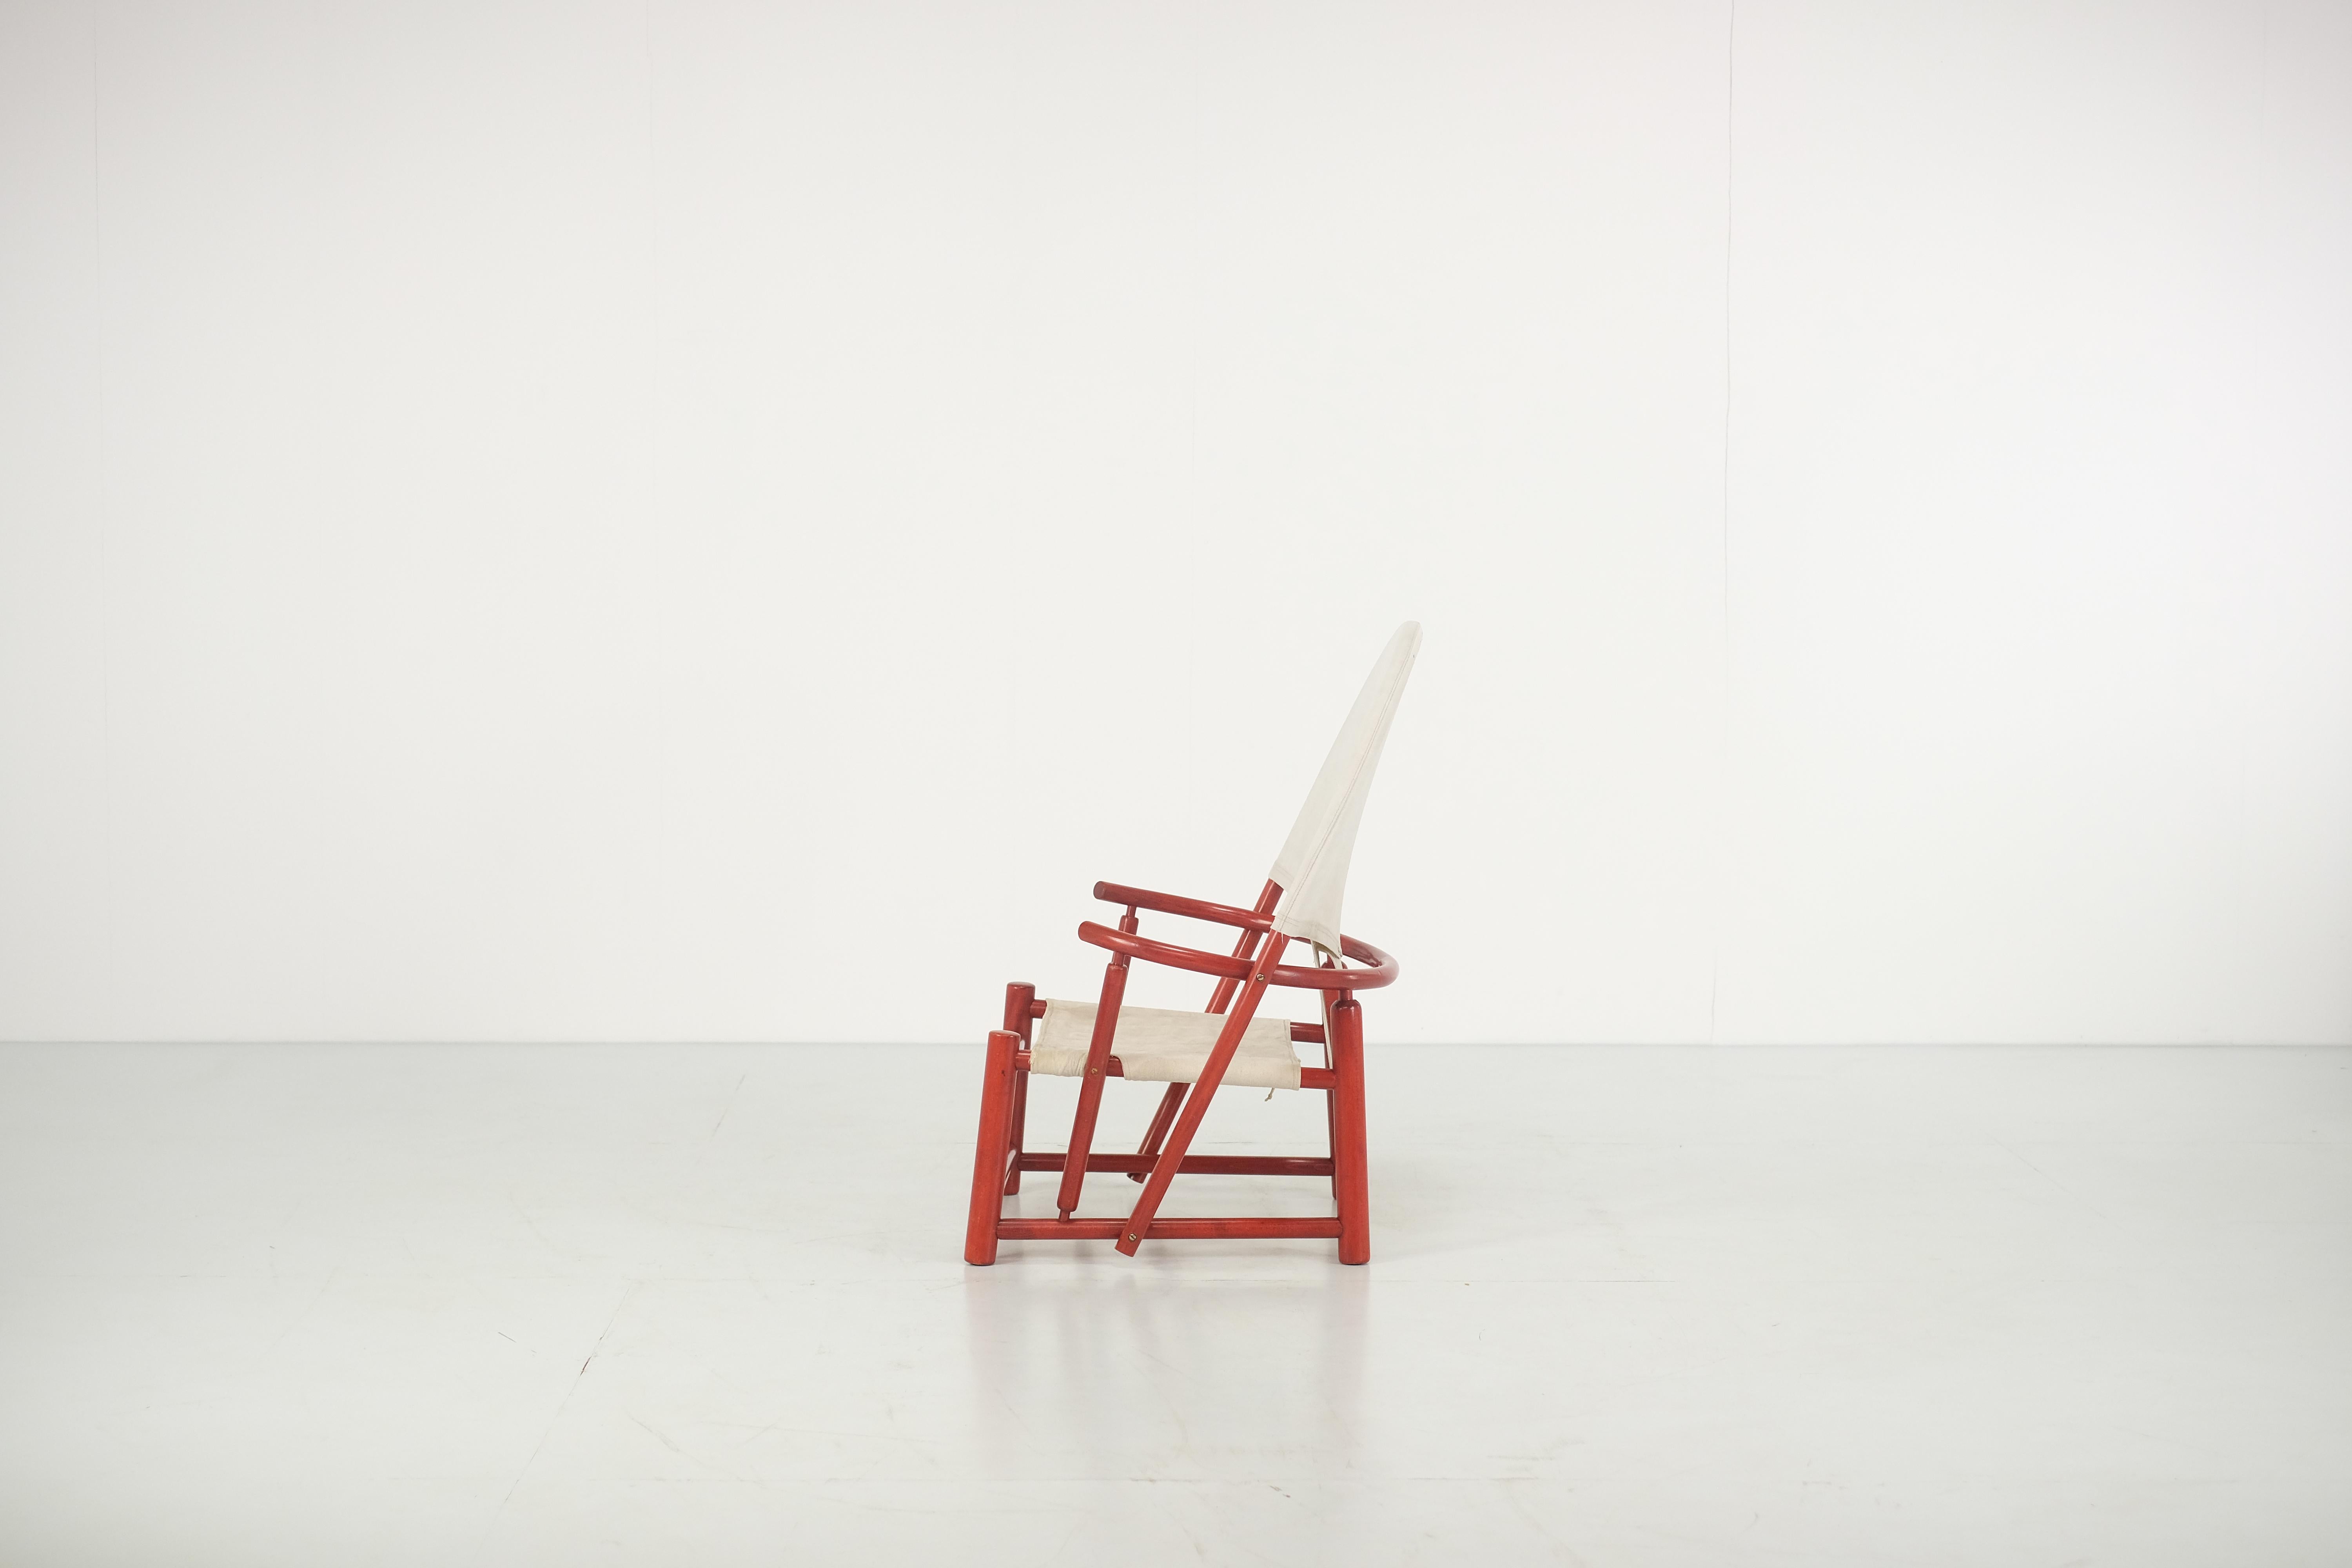 Magnifique chaise à arceau conçue par Werther Toffoloni et Piero Palange et produite par Germa Italie en 1972. Cette chaise hoop présente une belle combinaison d'une assise en tissu sur une structure en bois de hêtre. La présence et la qualité de